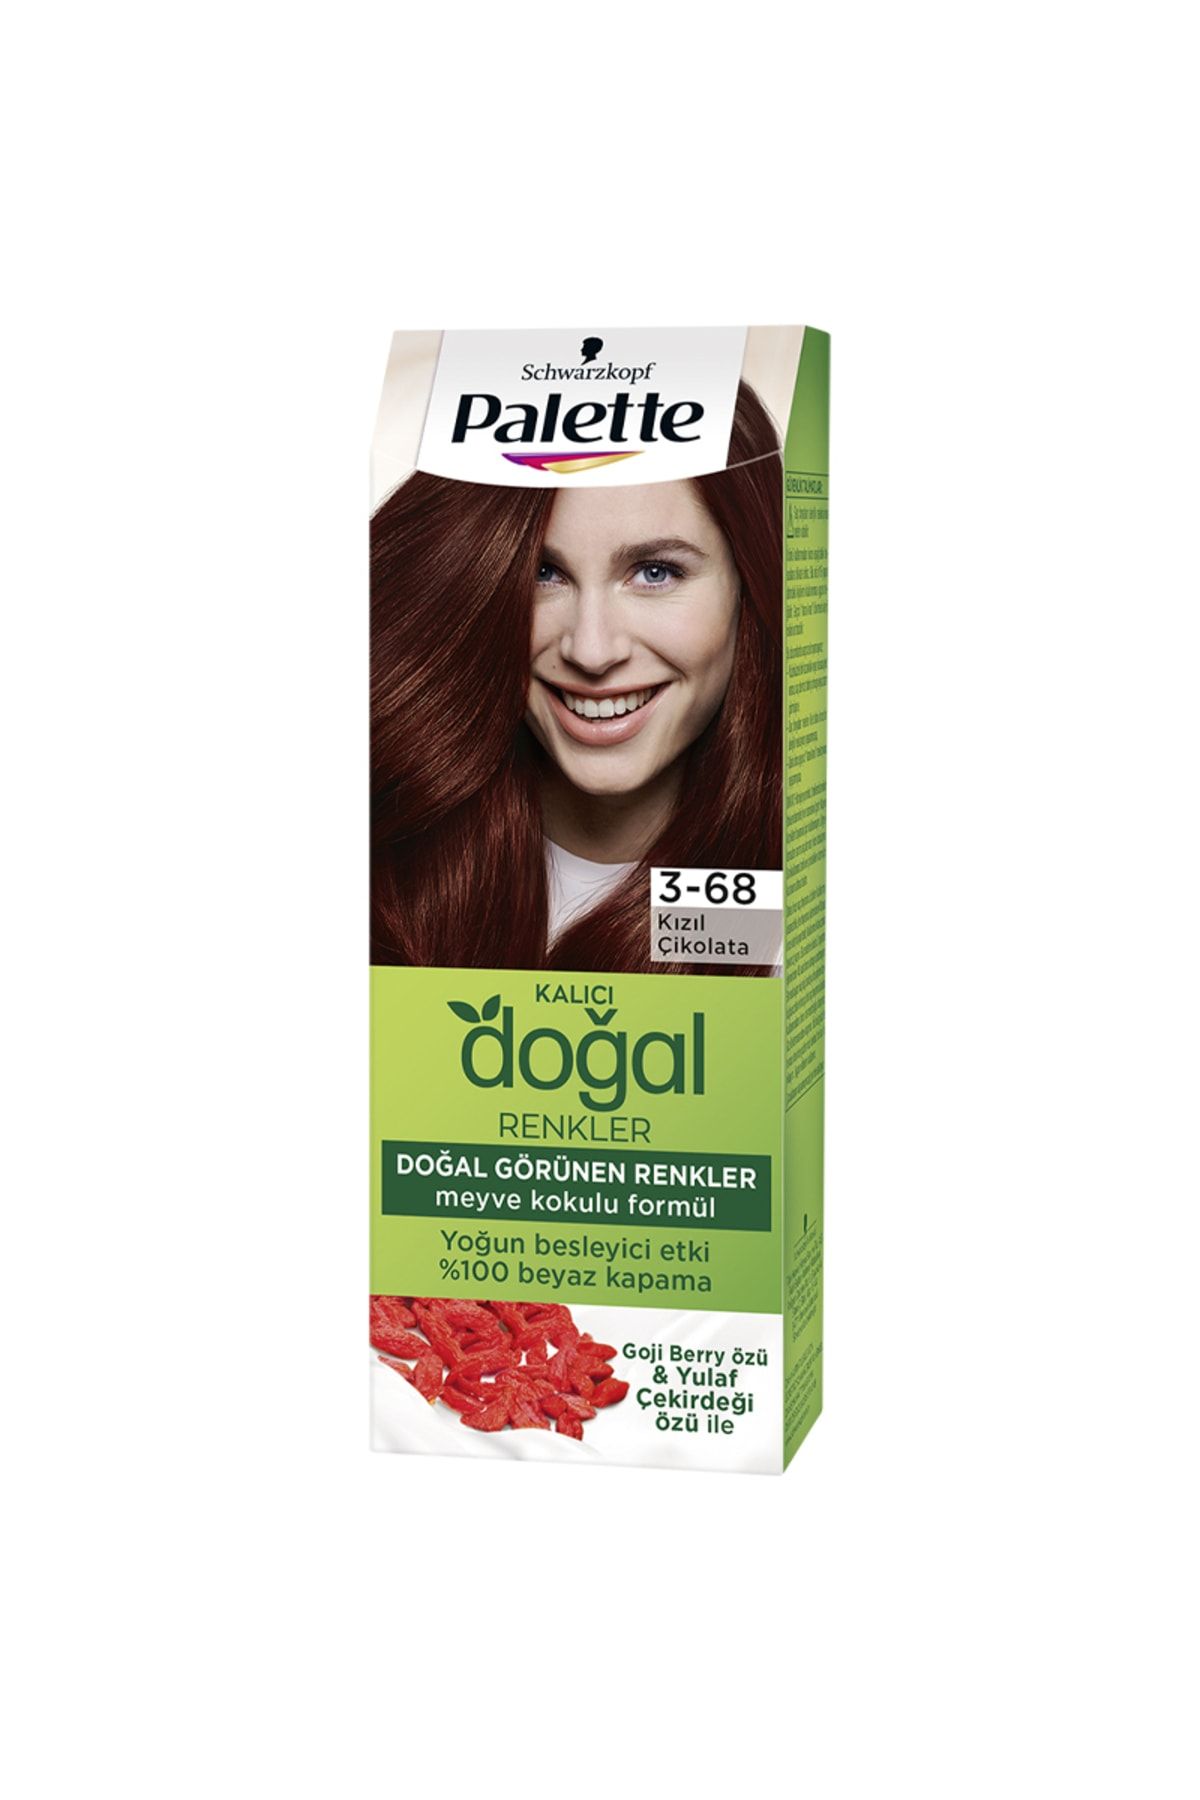 Palette ( FIRÇALIK HEDİYE ) Palette Kalıcı Doğal Renkler Saç Boyası 3-68 Kızıl Çikolata ( 1 ADET )